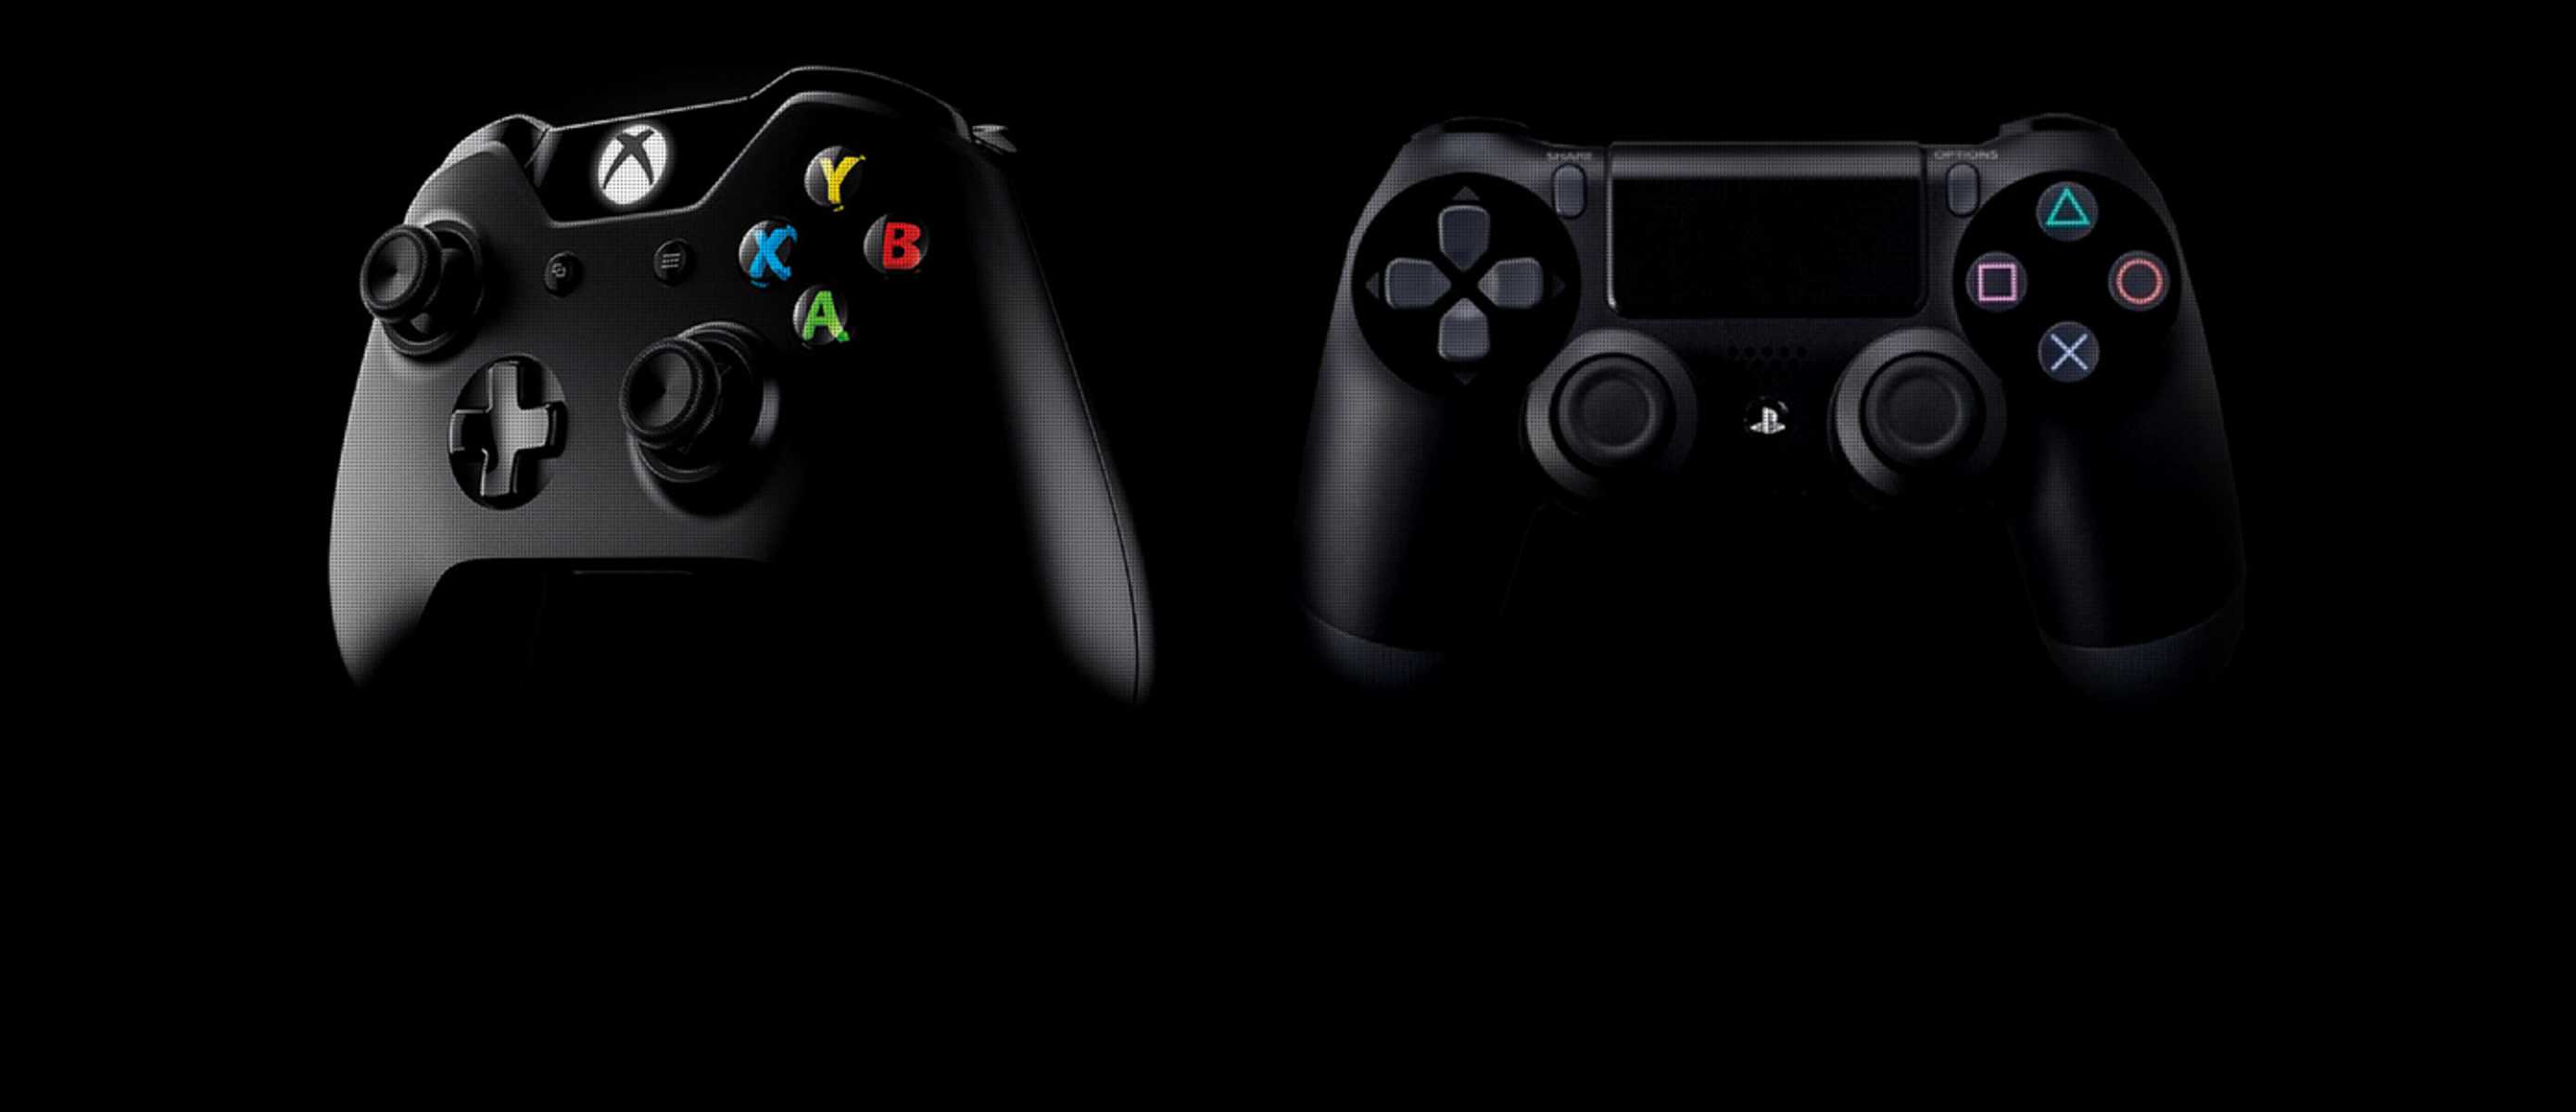 Неожиданно для многих компания Sony представила совершенно новый геймпад анонсированный в качестве интересного дополнения для Sony PlayStation 5 Новинка получила